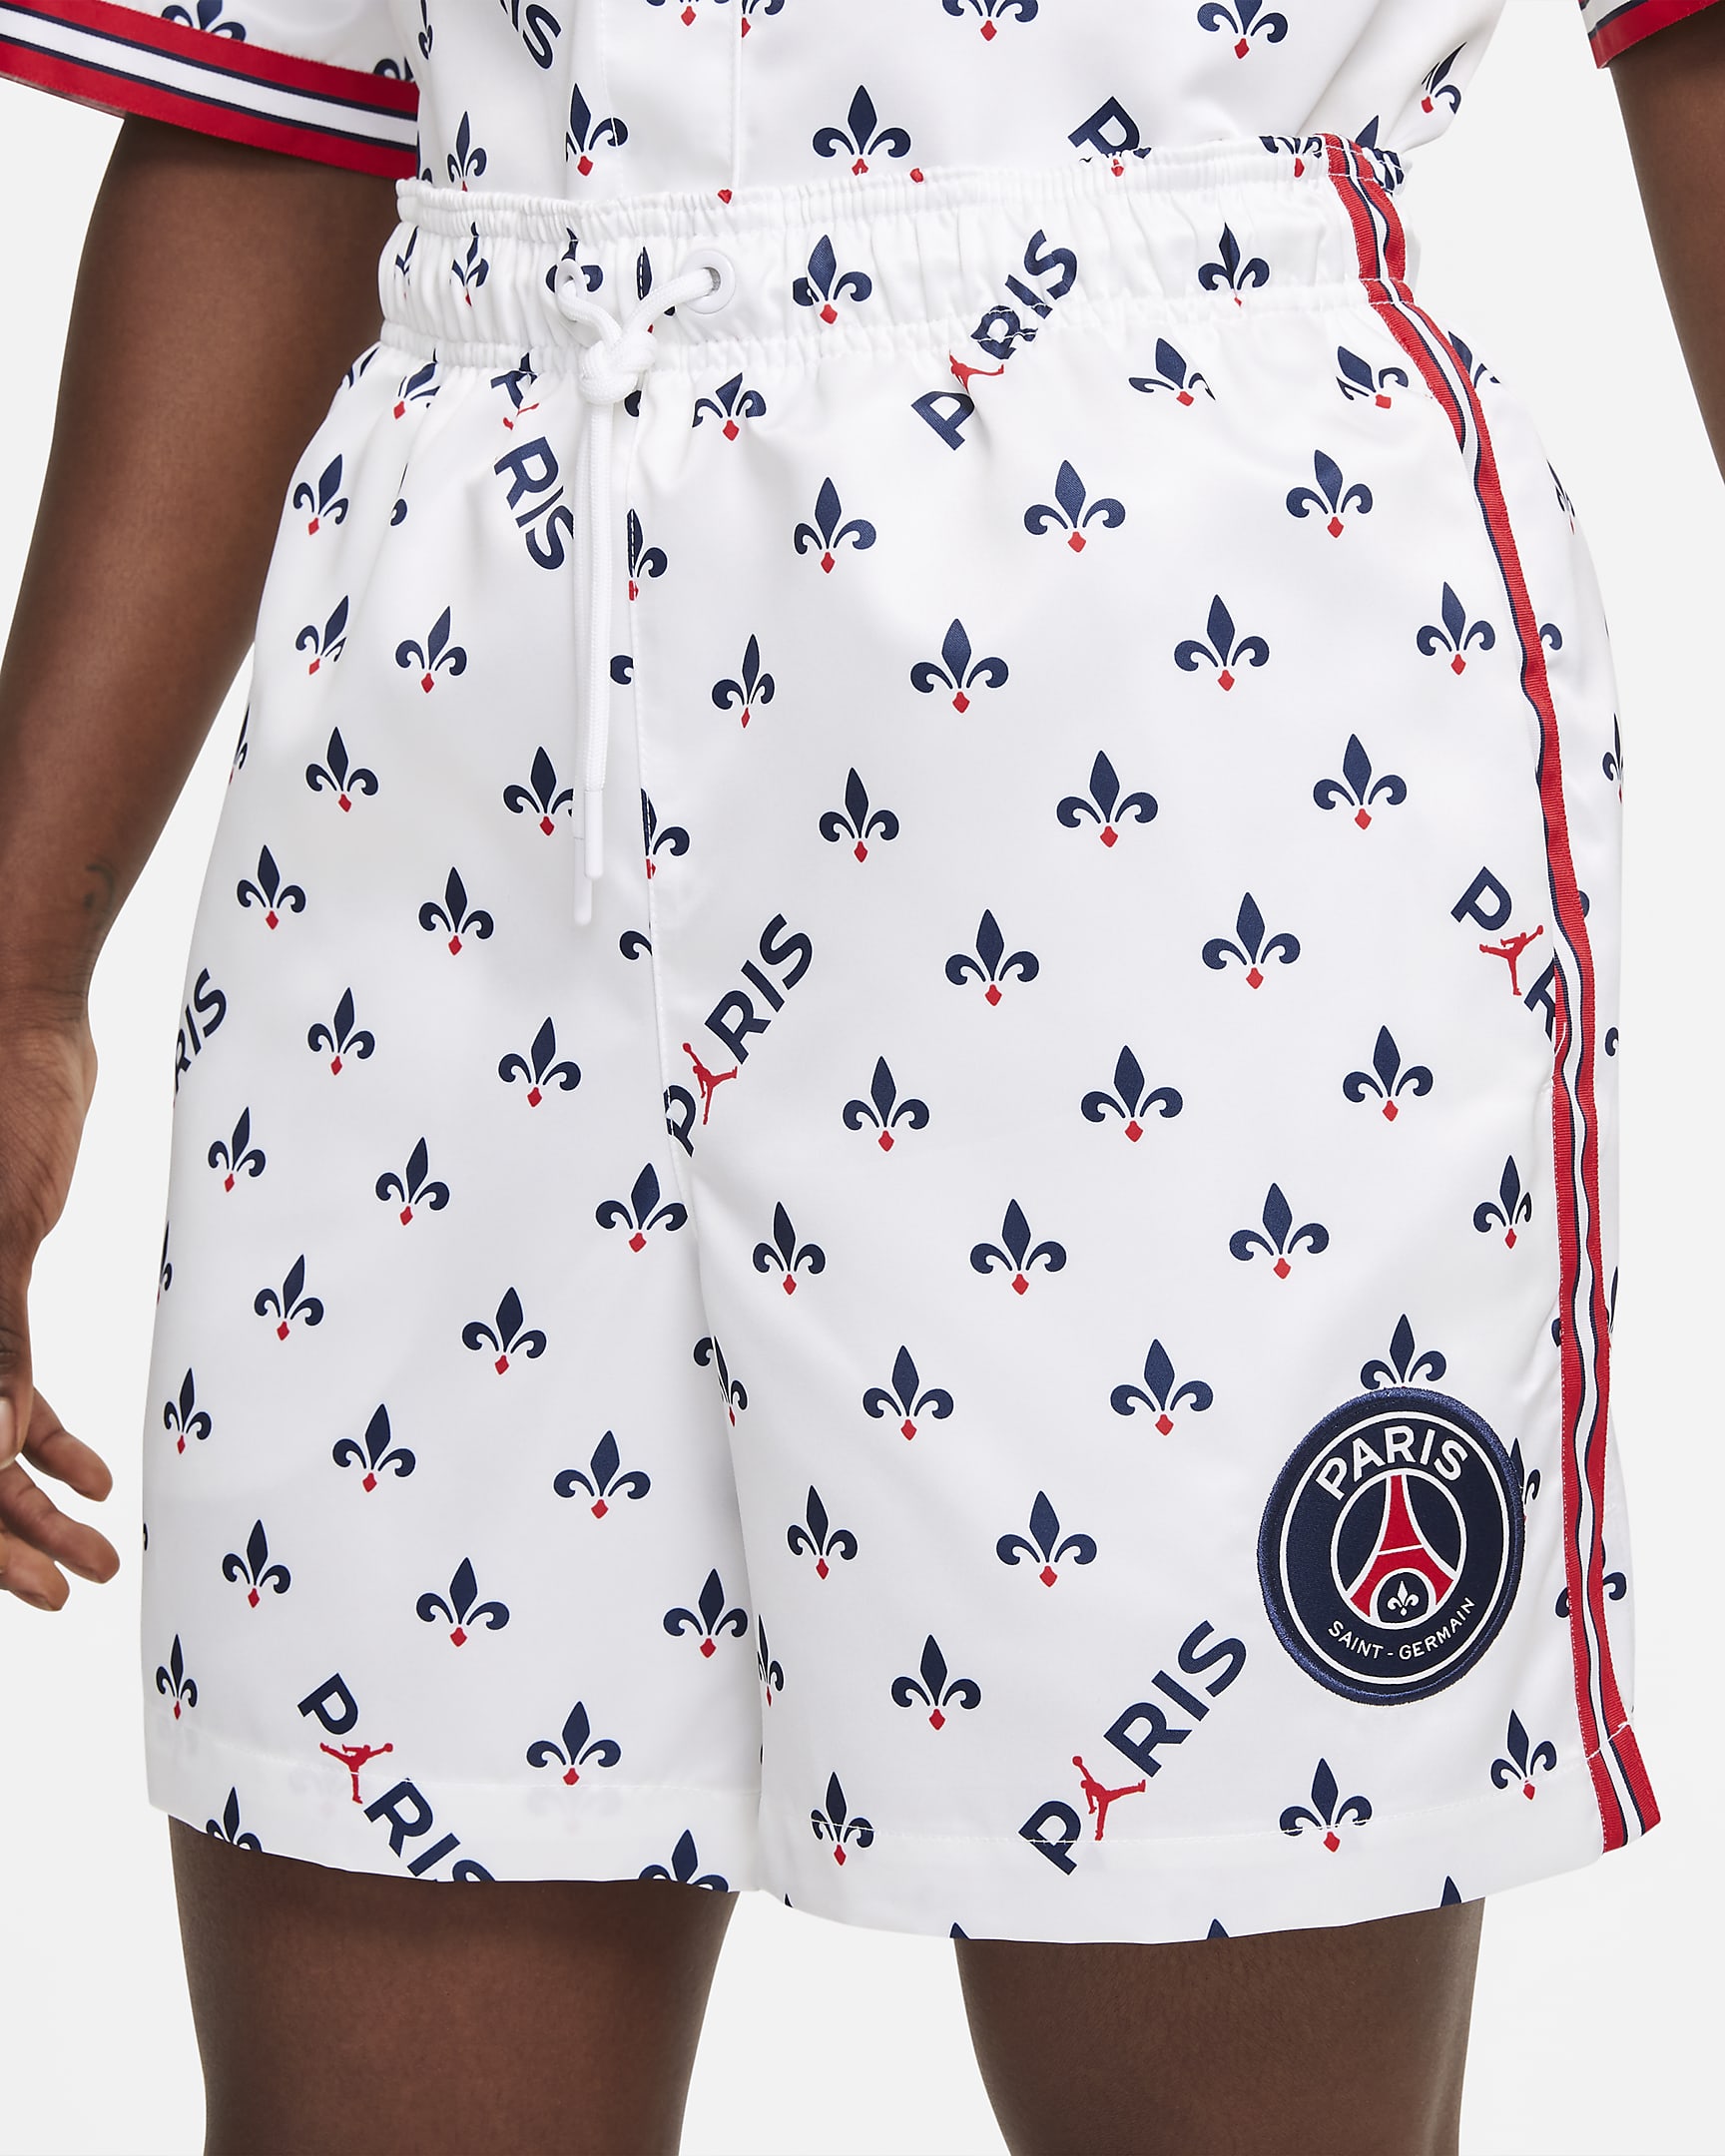 Paris Saint-Germain shorts